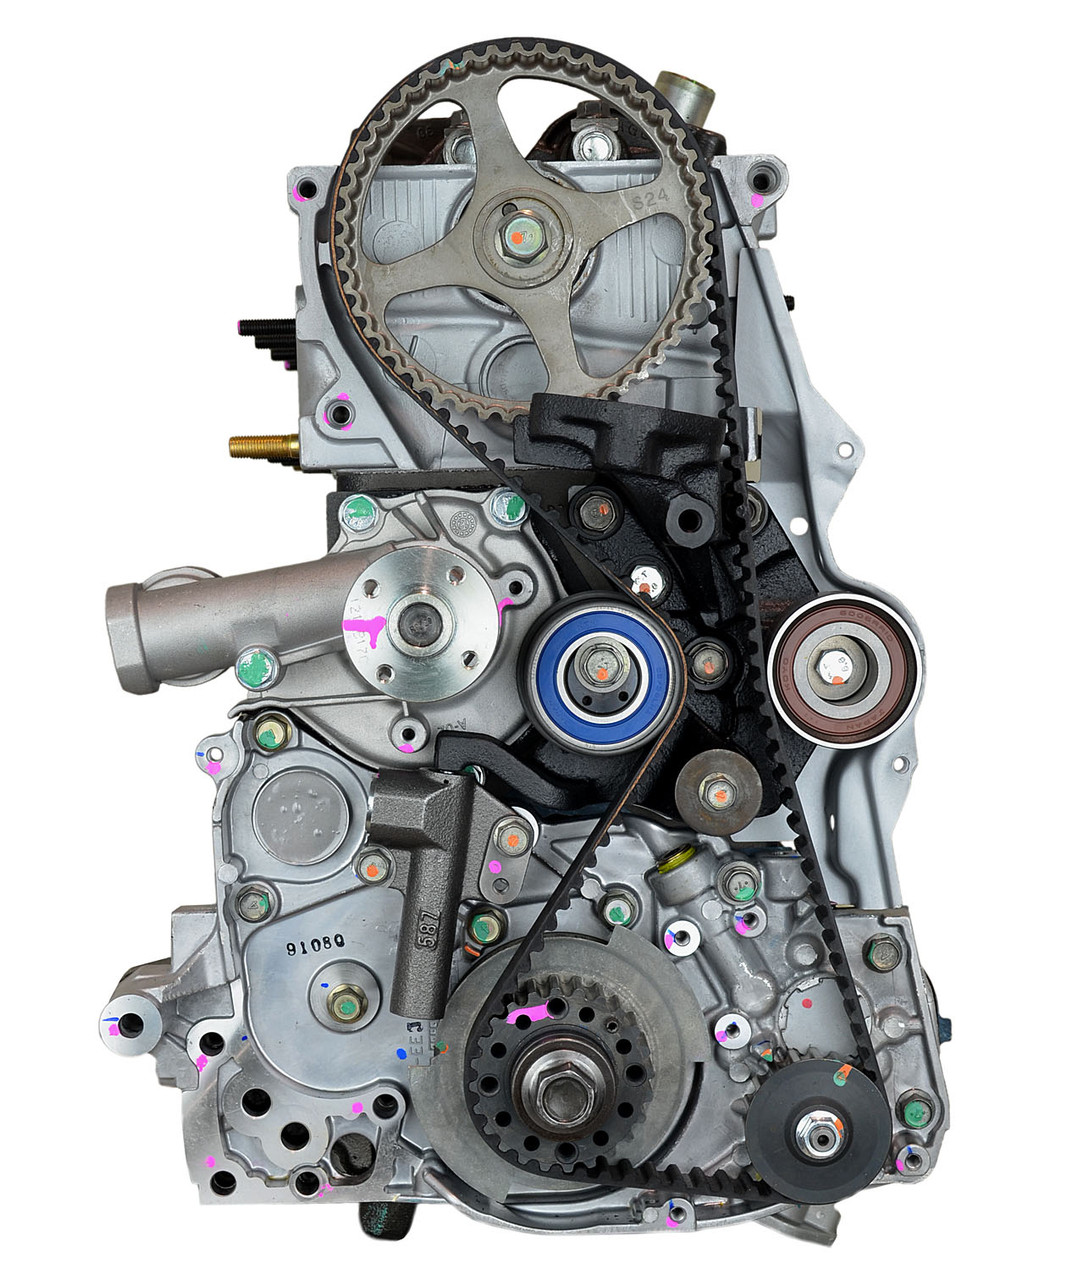 Двигатель Митсубиси 4g64. Двигатель Mitsubishi 2.4 4g64. Двигатель 4g64 Мицубиси 2.4. 4g64 Mitsubishi 2.4.